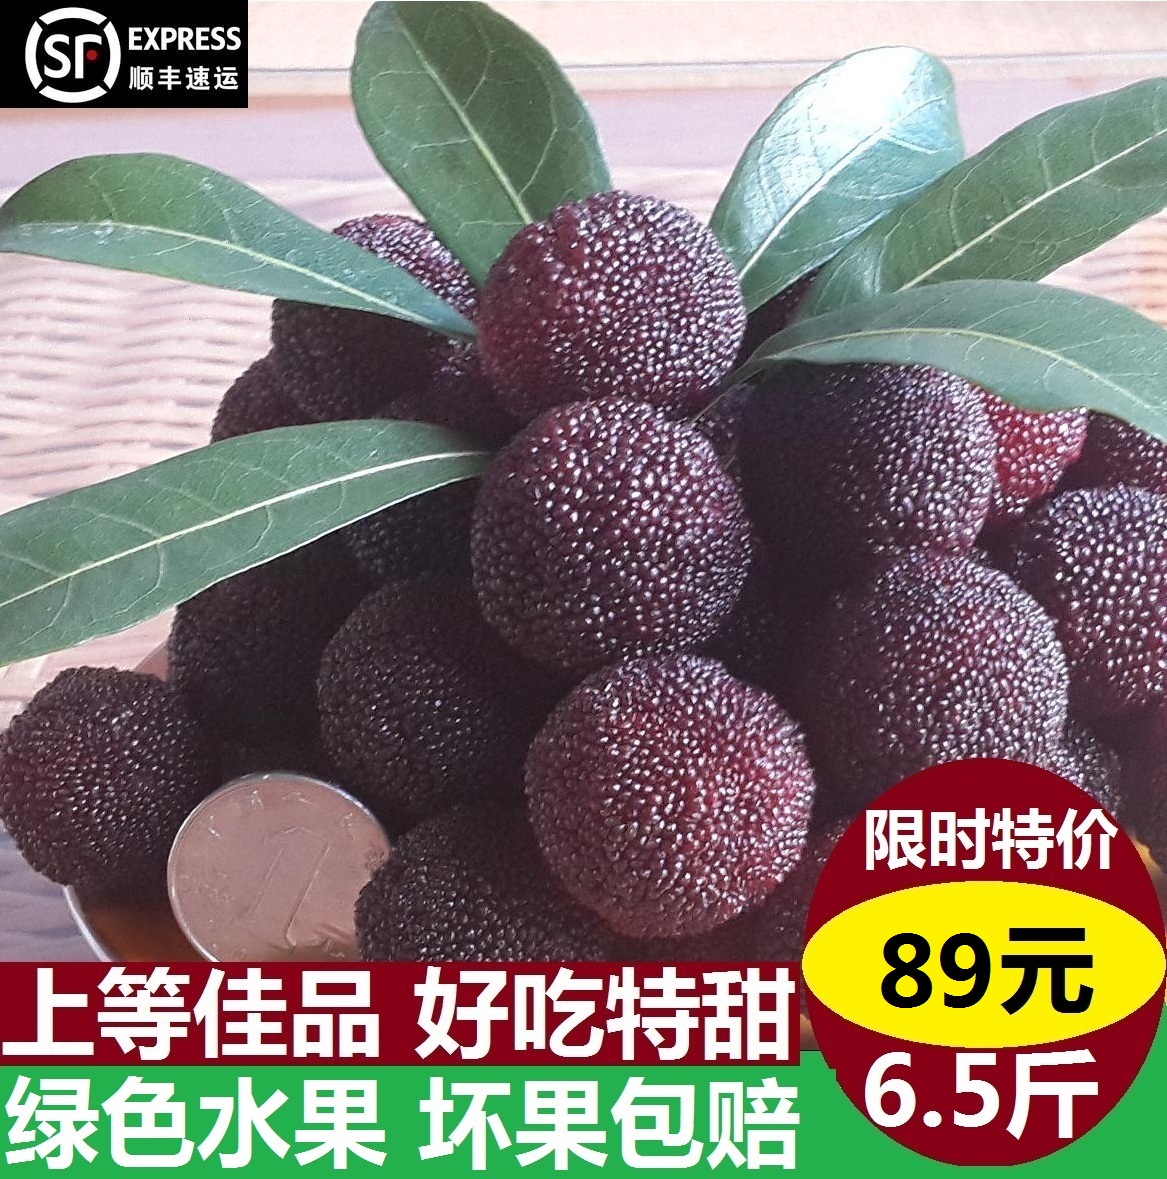 【现摘特甜】新鲜杨梅 仙居荸荠东魁杨梅 孕妇水果 顺丰空运6斤